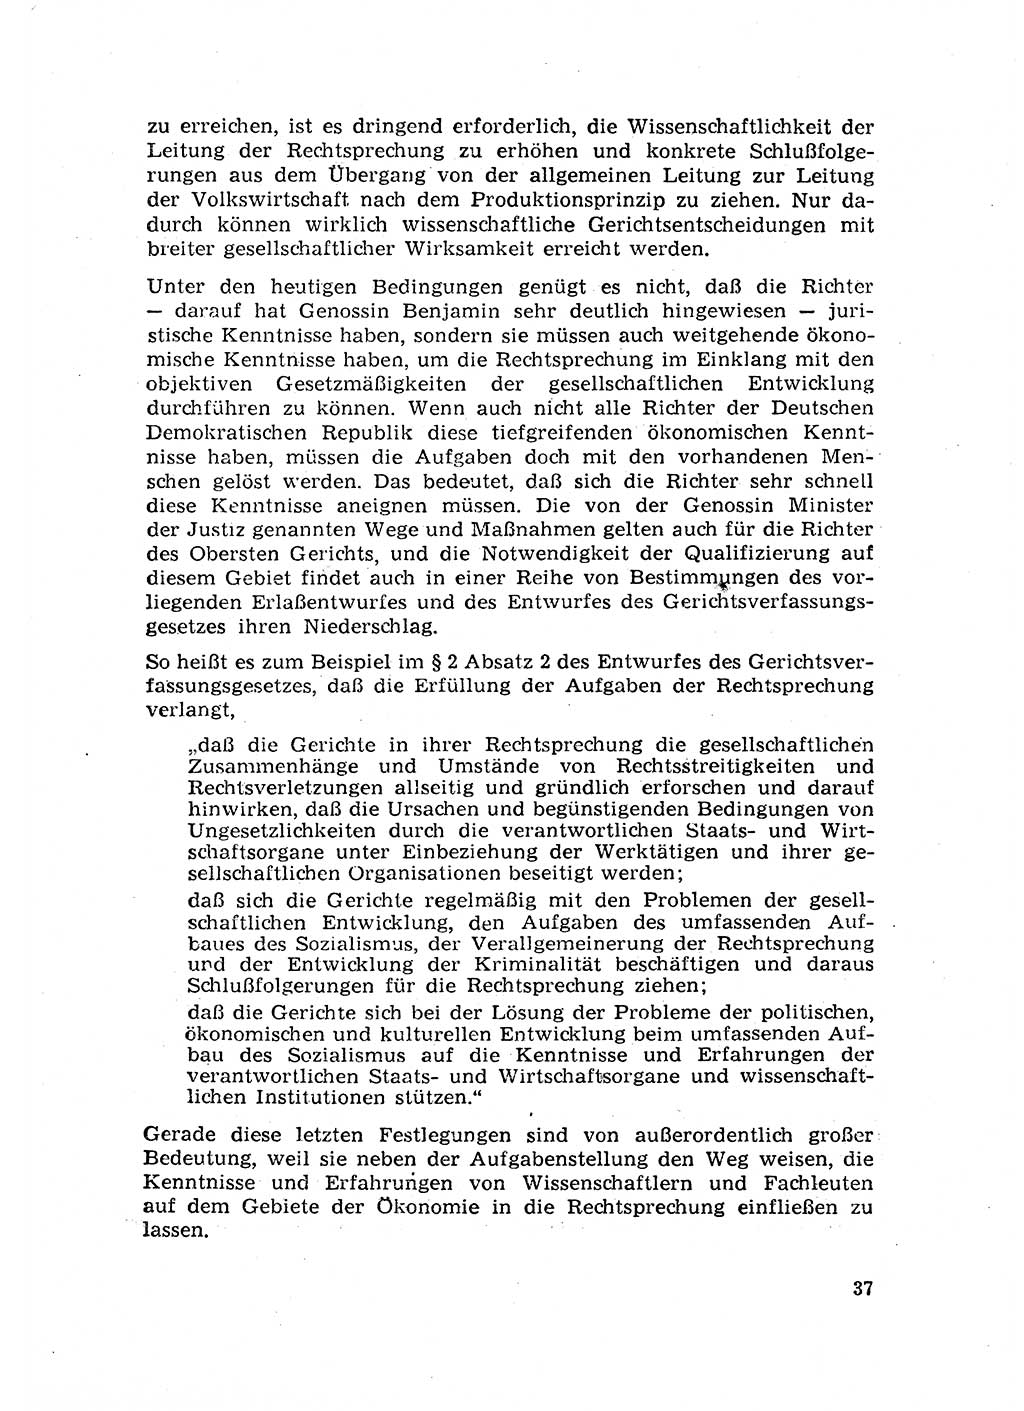 Rechtspflegeerlaß [Deutsche Demokratische Republik (DDR)] 1963, Seite 37 (R.-Pfl.-Erl. DDR 1963, S. 37)